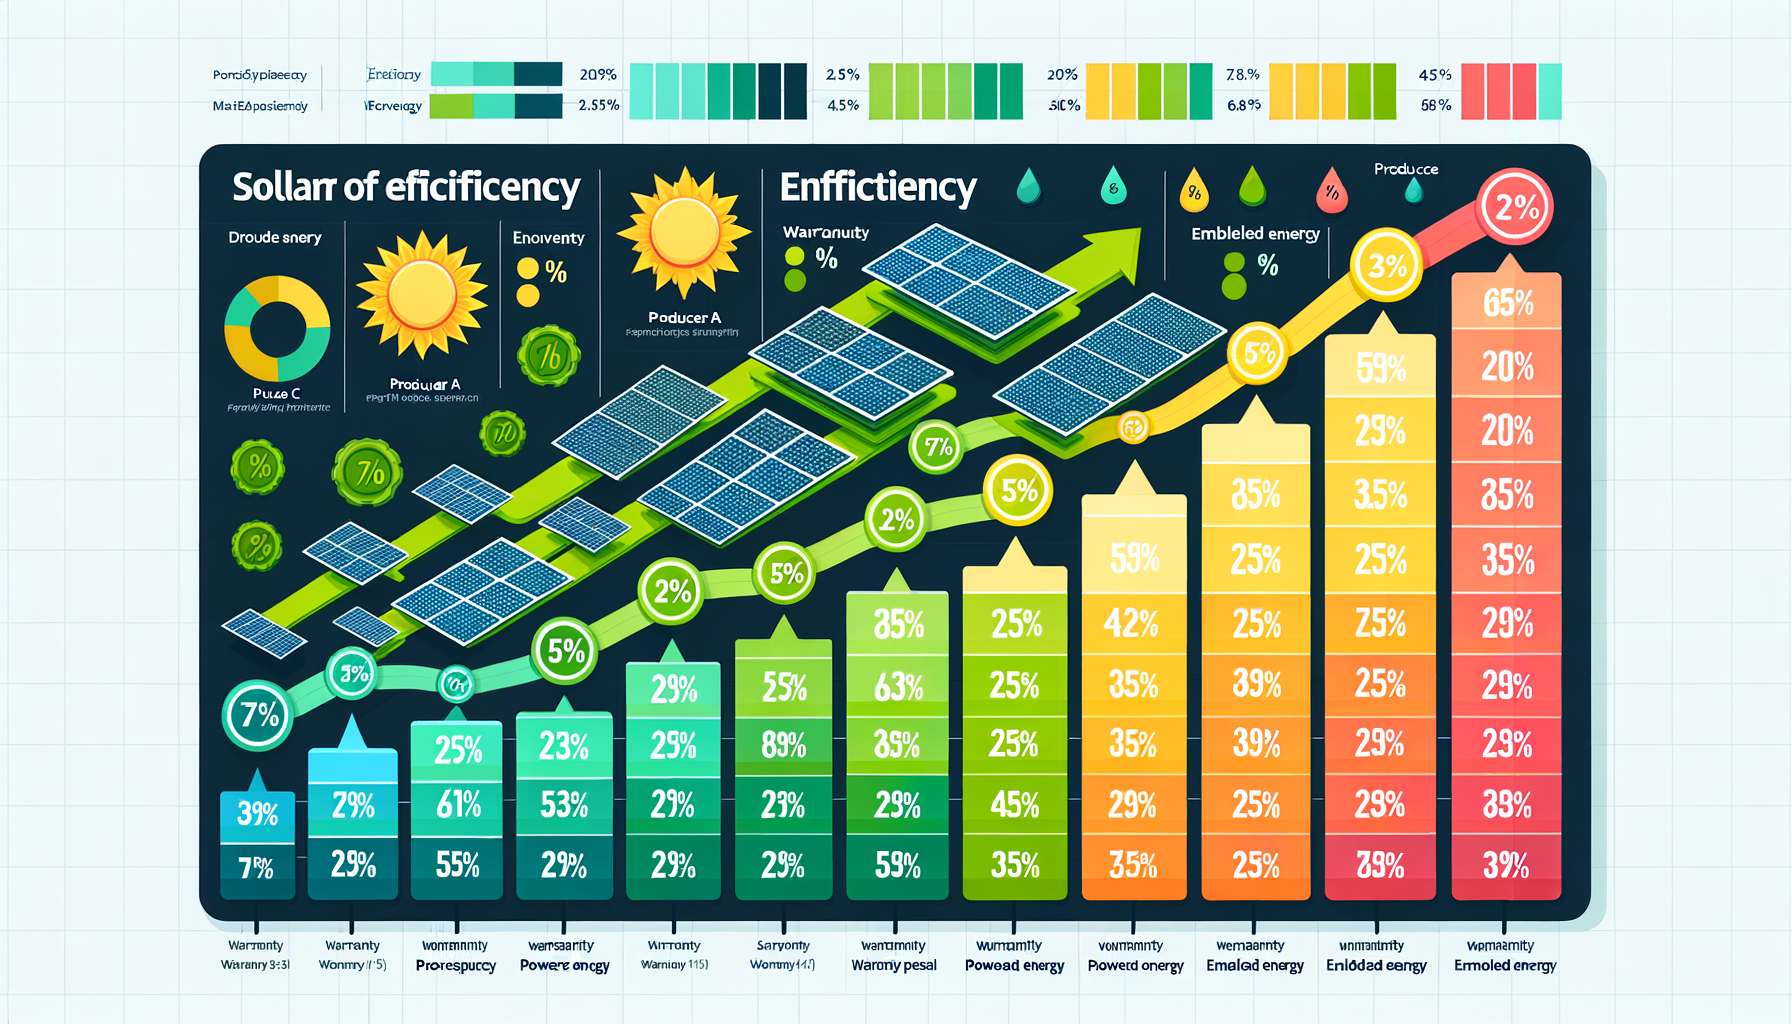 ALT: Chart comparing top solar panel efficiencies